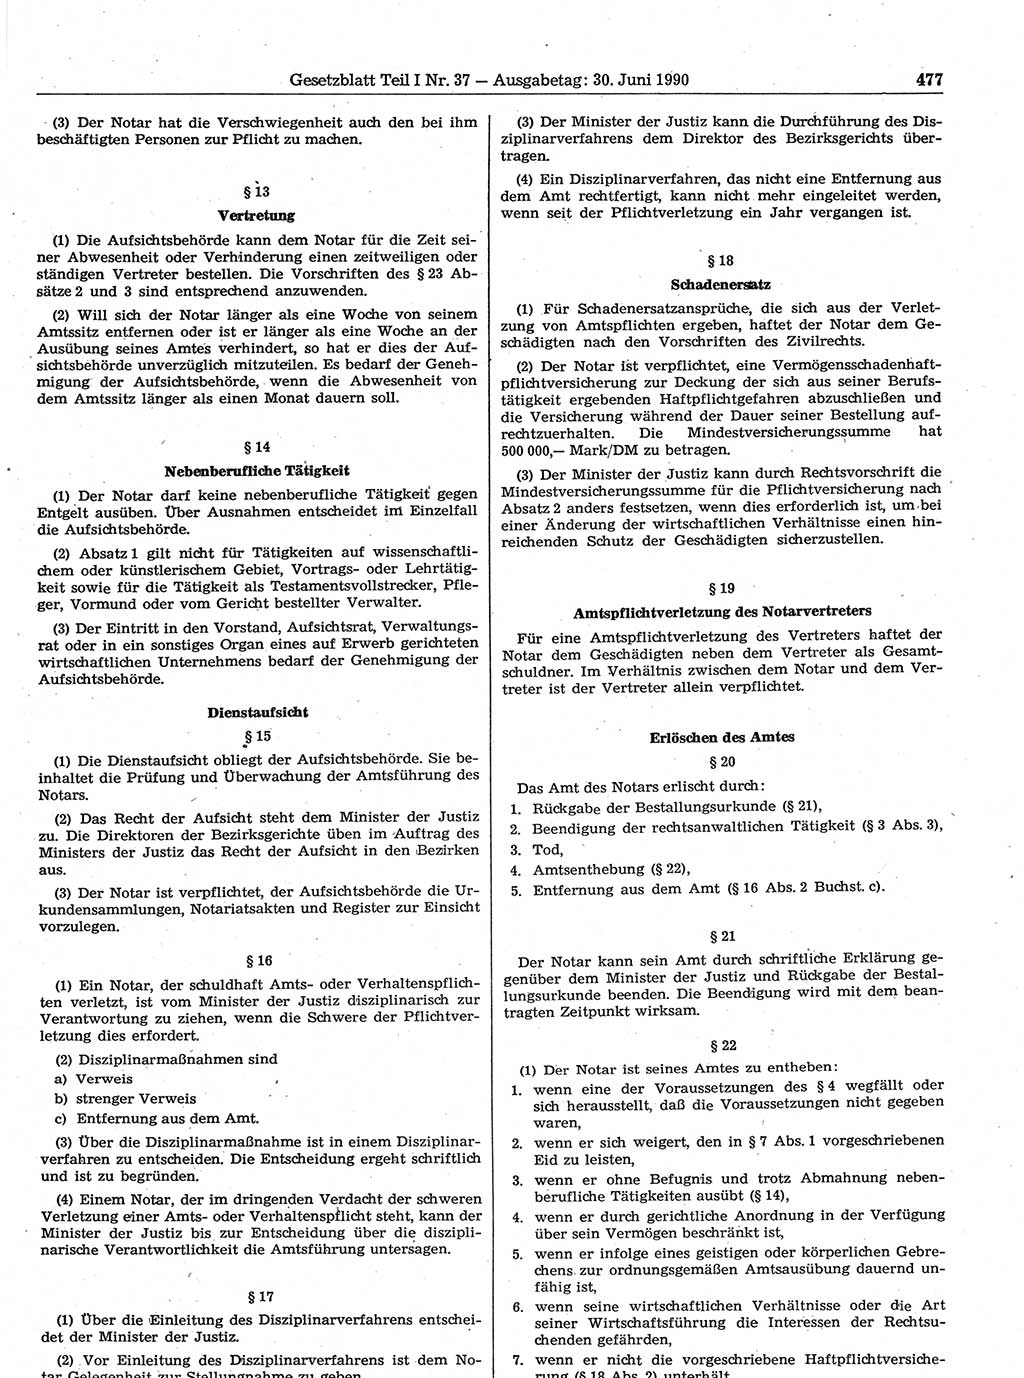 Gesetzblatt (GBl.) der Deutschen Demokratischen Republik (DDR) Teil Ⅰ 1990, Seite 477 (GBl. DDR Ⅰ 1990, S. 477)